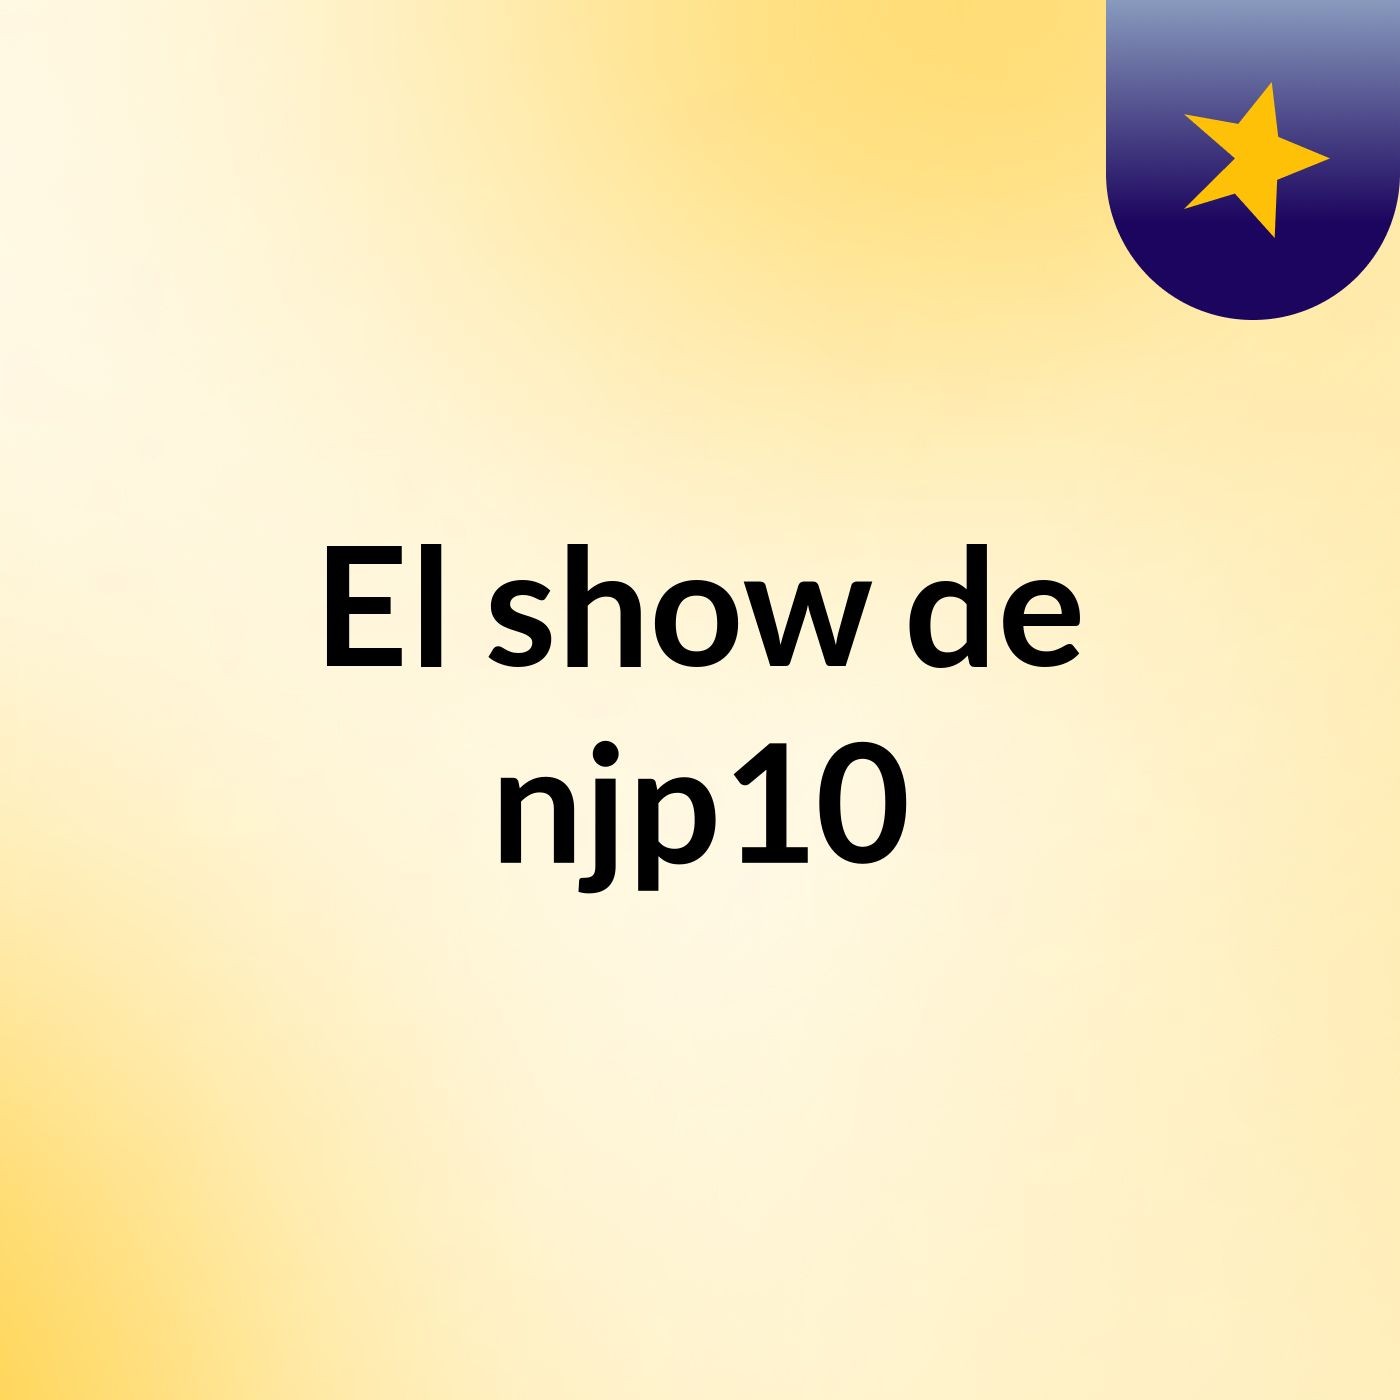 El show de njp10